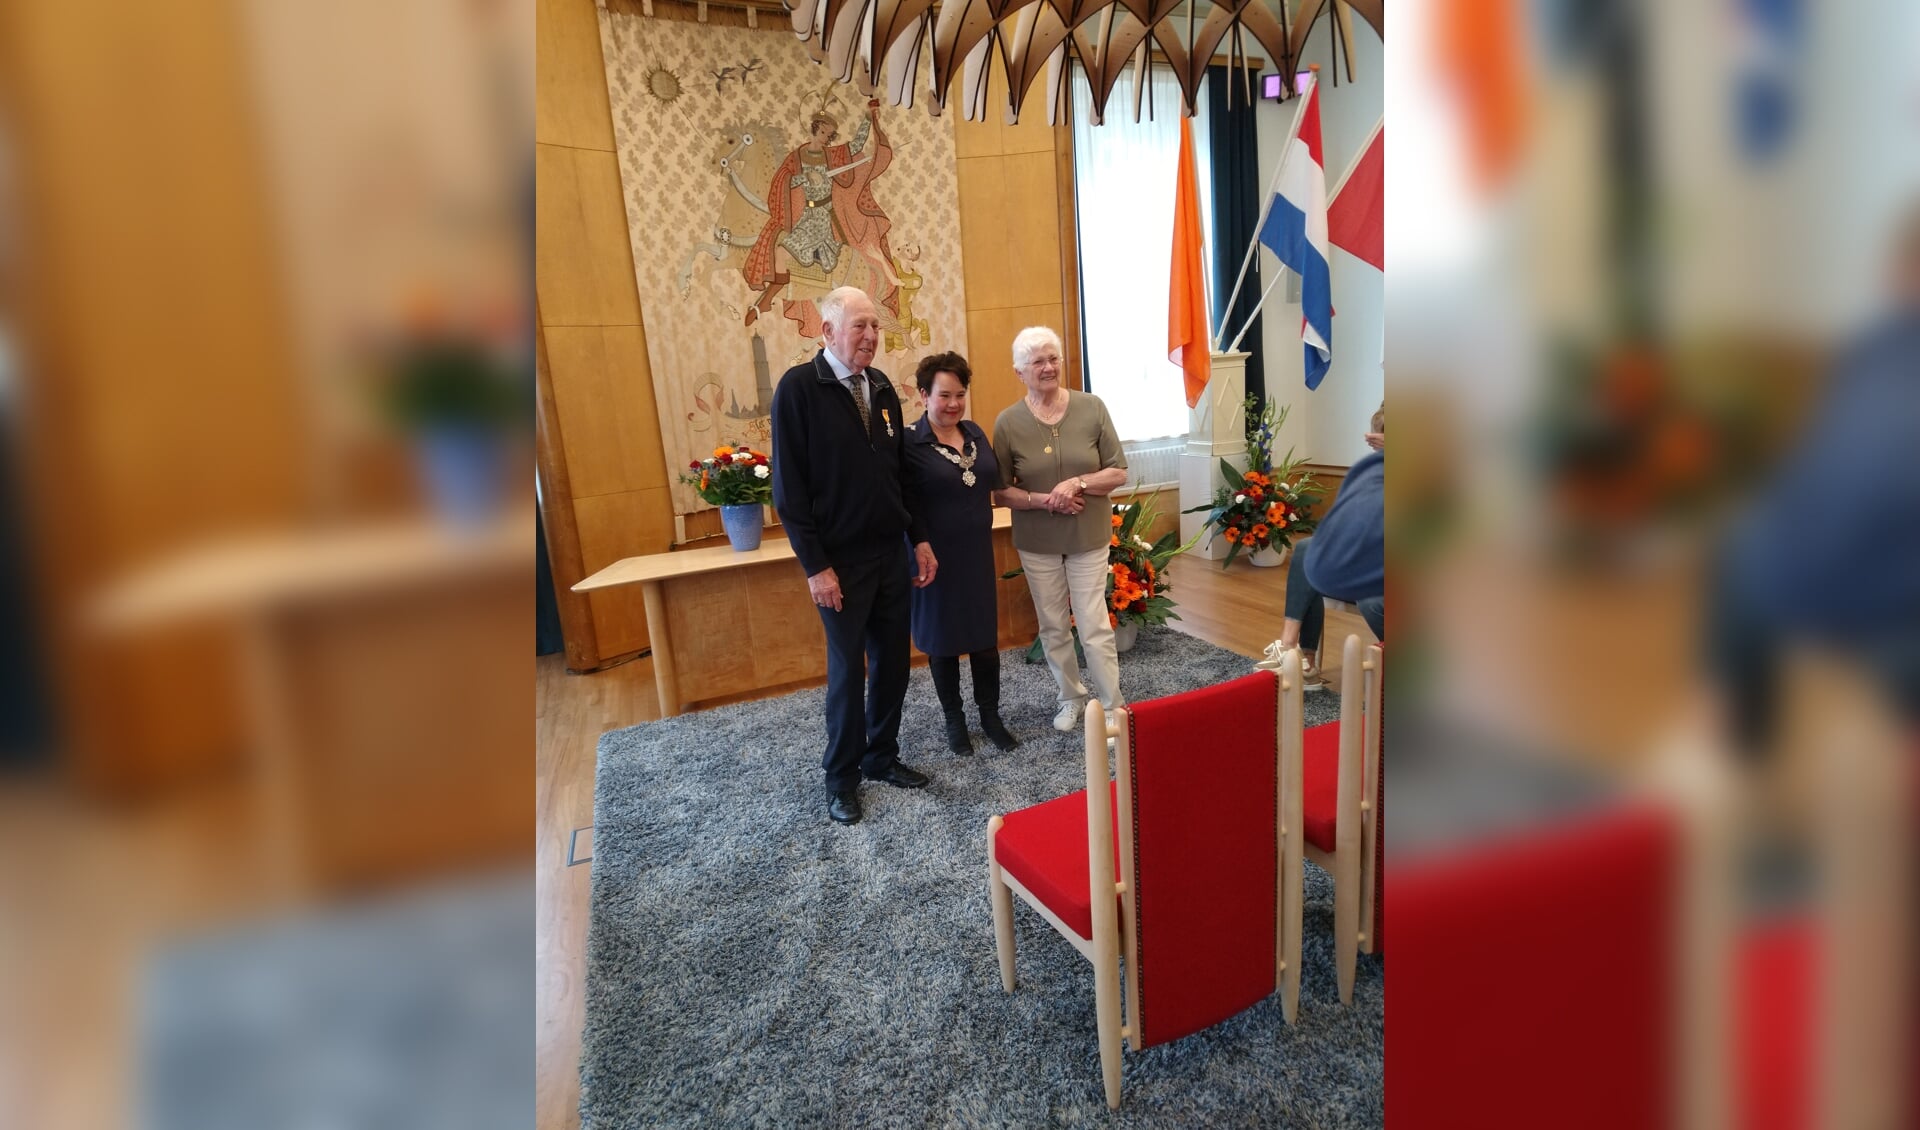 Gerard van Dijk met zijn vrouw en burgemeester Sharon Dijksma